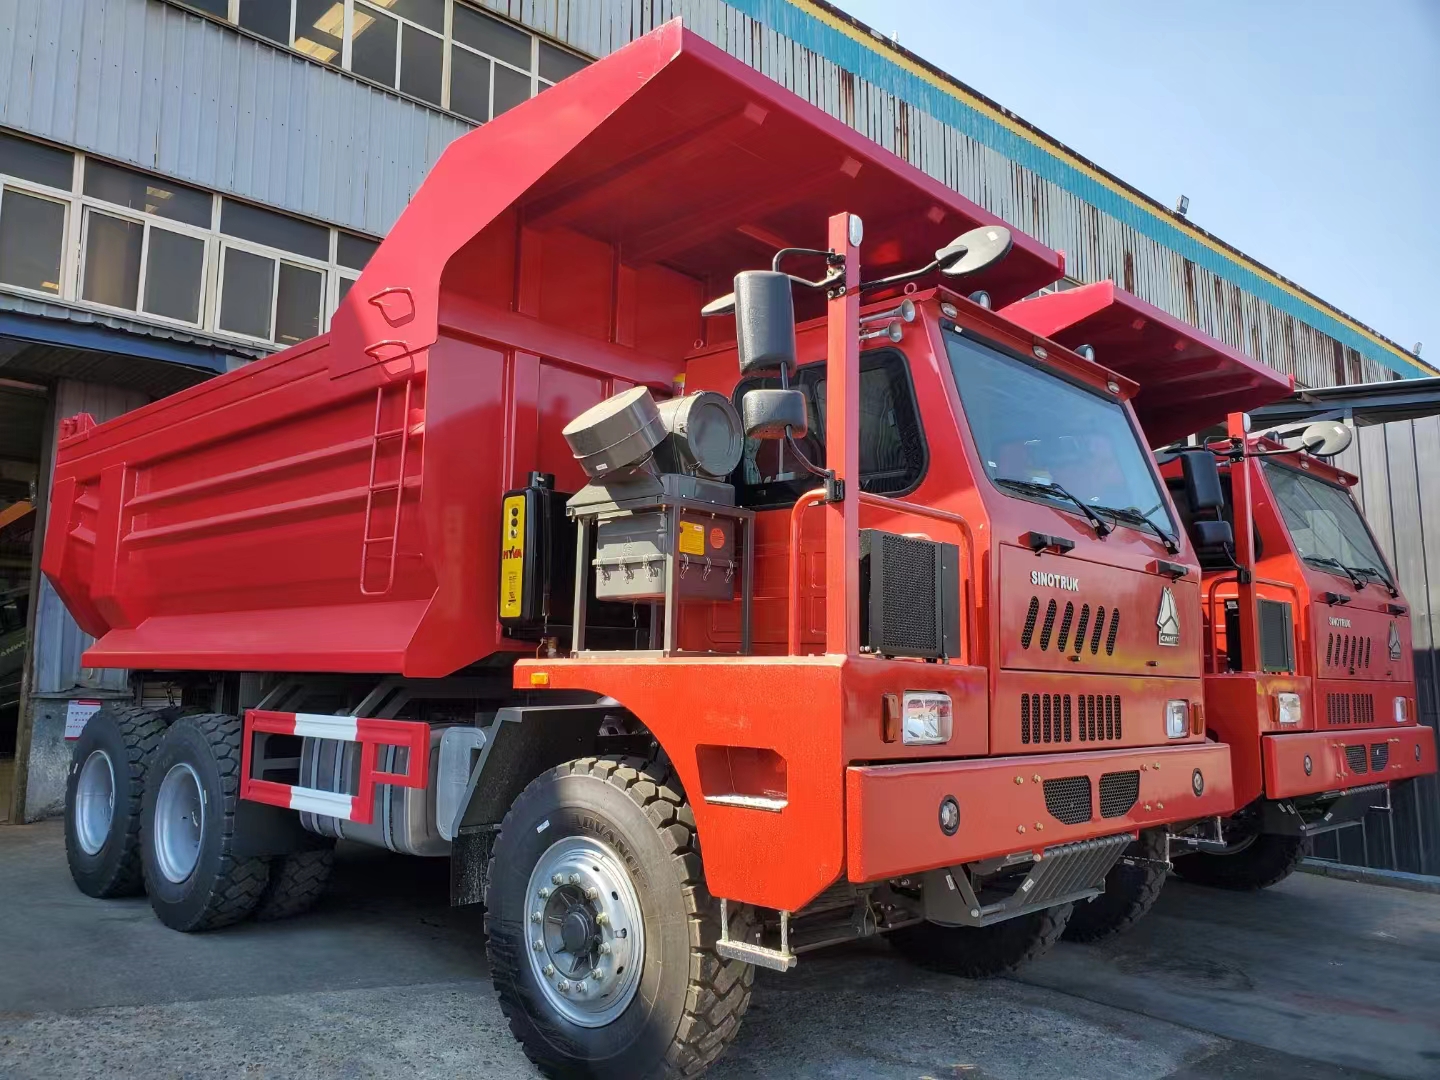 heavy duty mining use dump trucks are ready for shipment